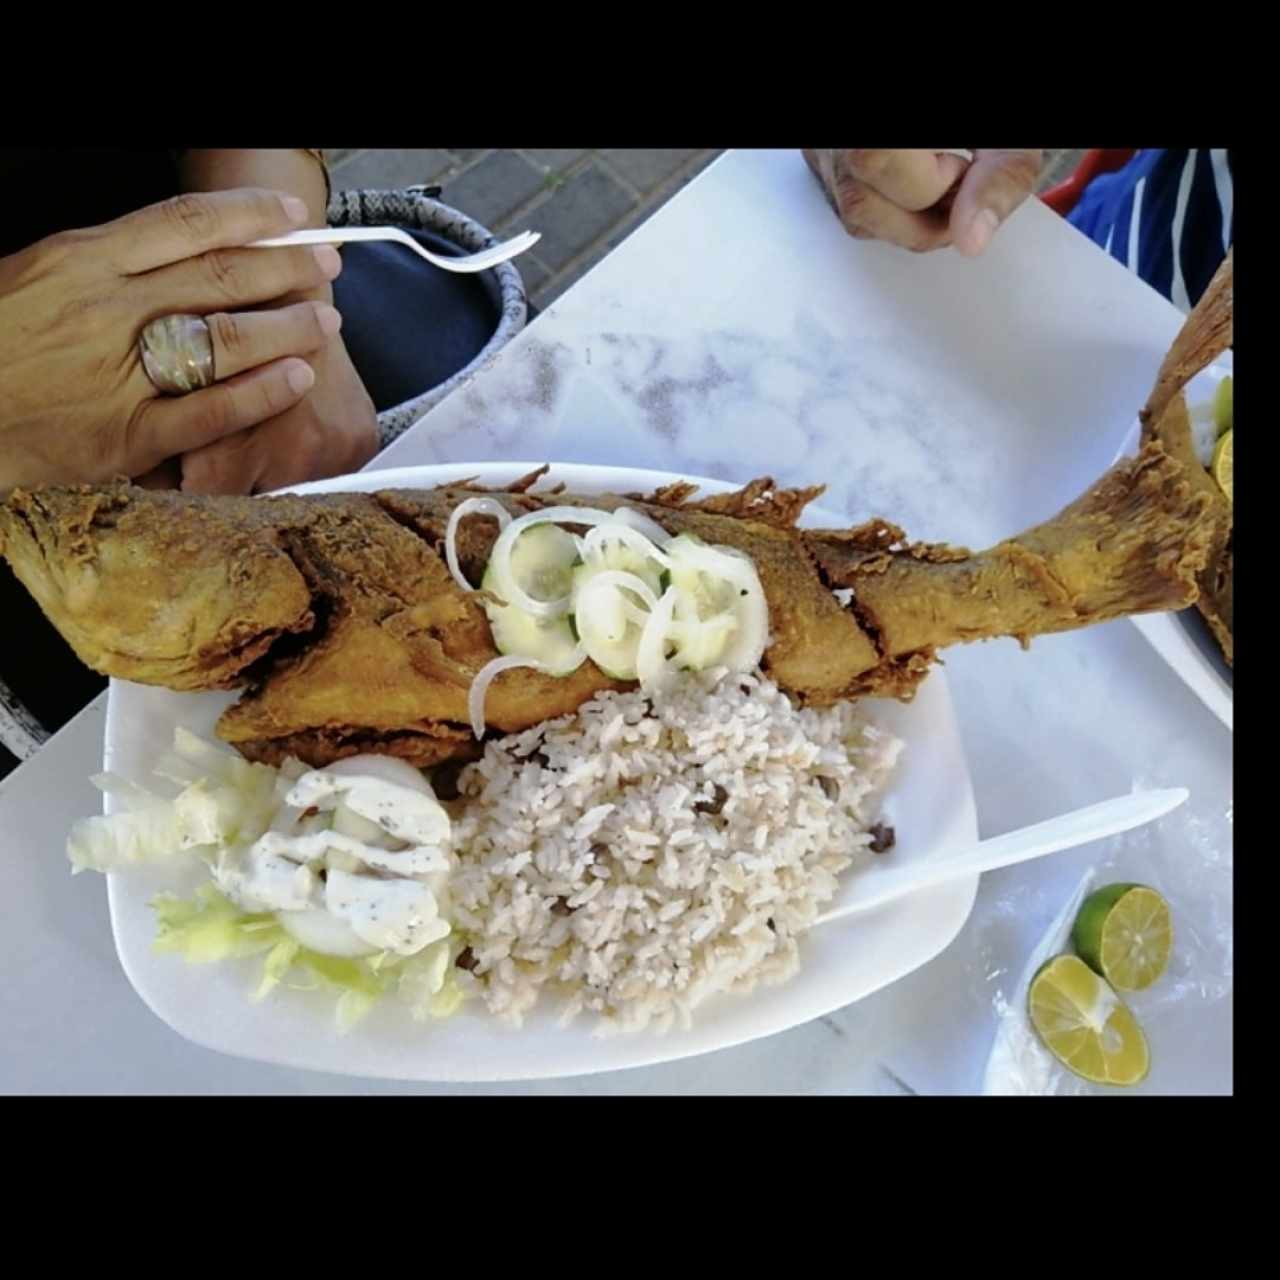 Pescao Frito - Arroz con Guandú y Coco